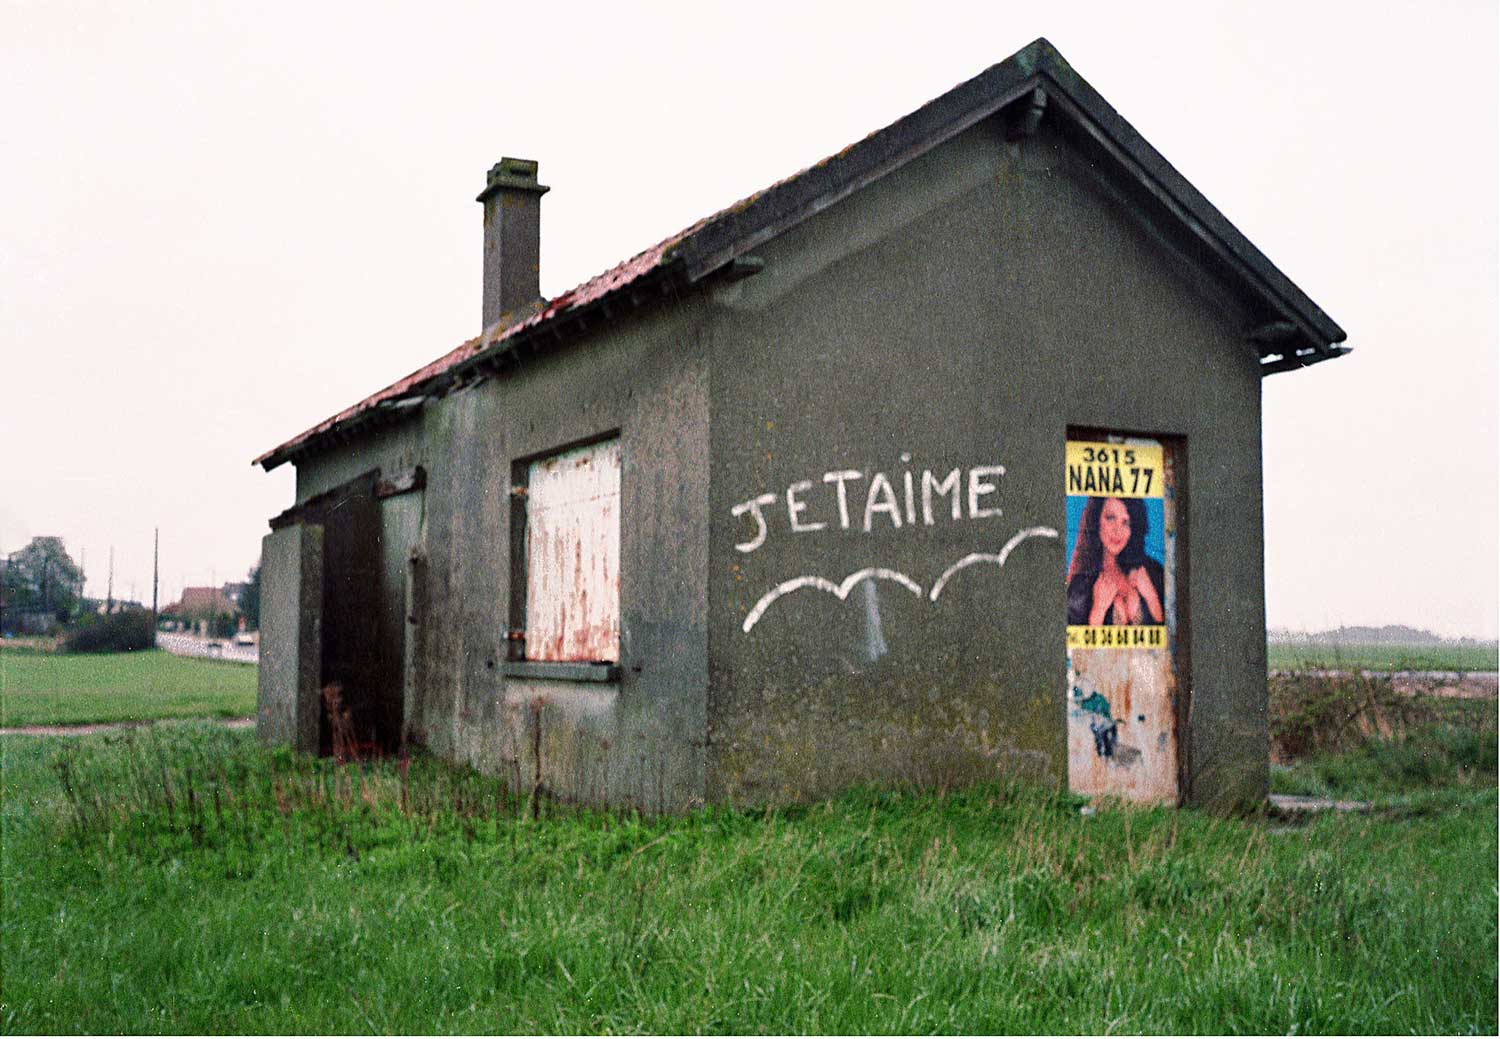 Bernard Bazile - Petite maison - Je t'aime - 3615 NANA 77, 1988-94/2019